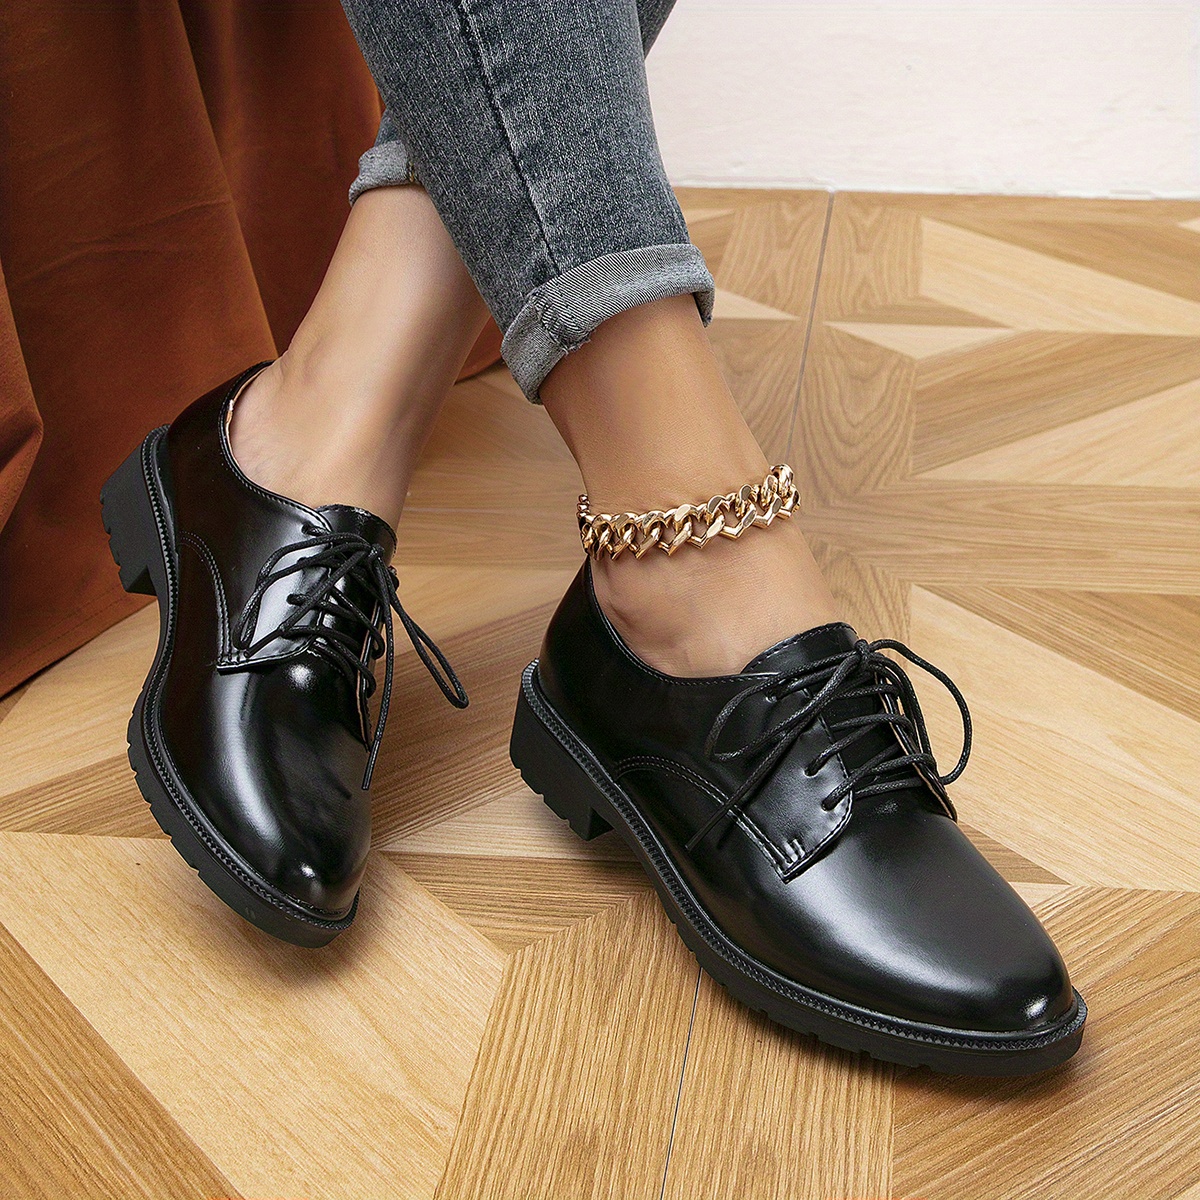 Chaussures de danse oxford élégantes pour femmes, en cuir suédé gris doux  et imprimés cachemire gris -  France